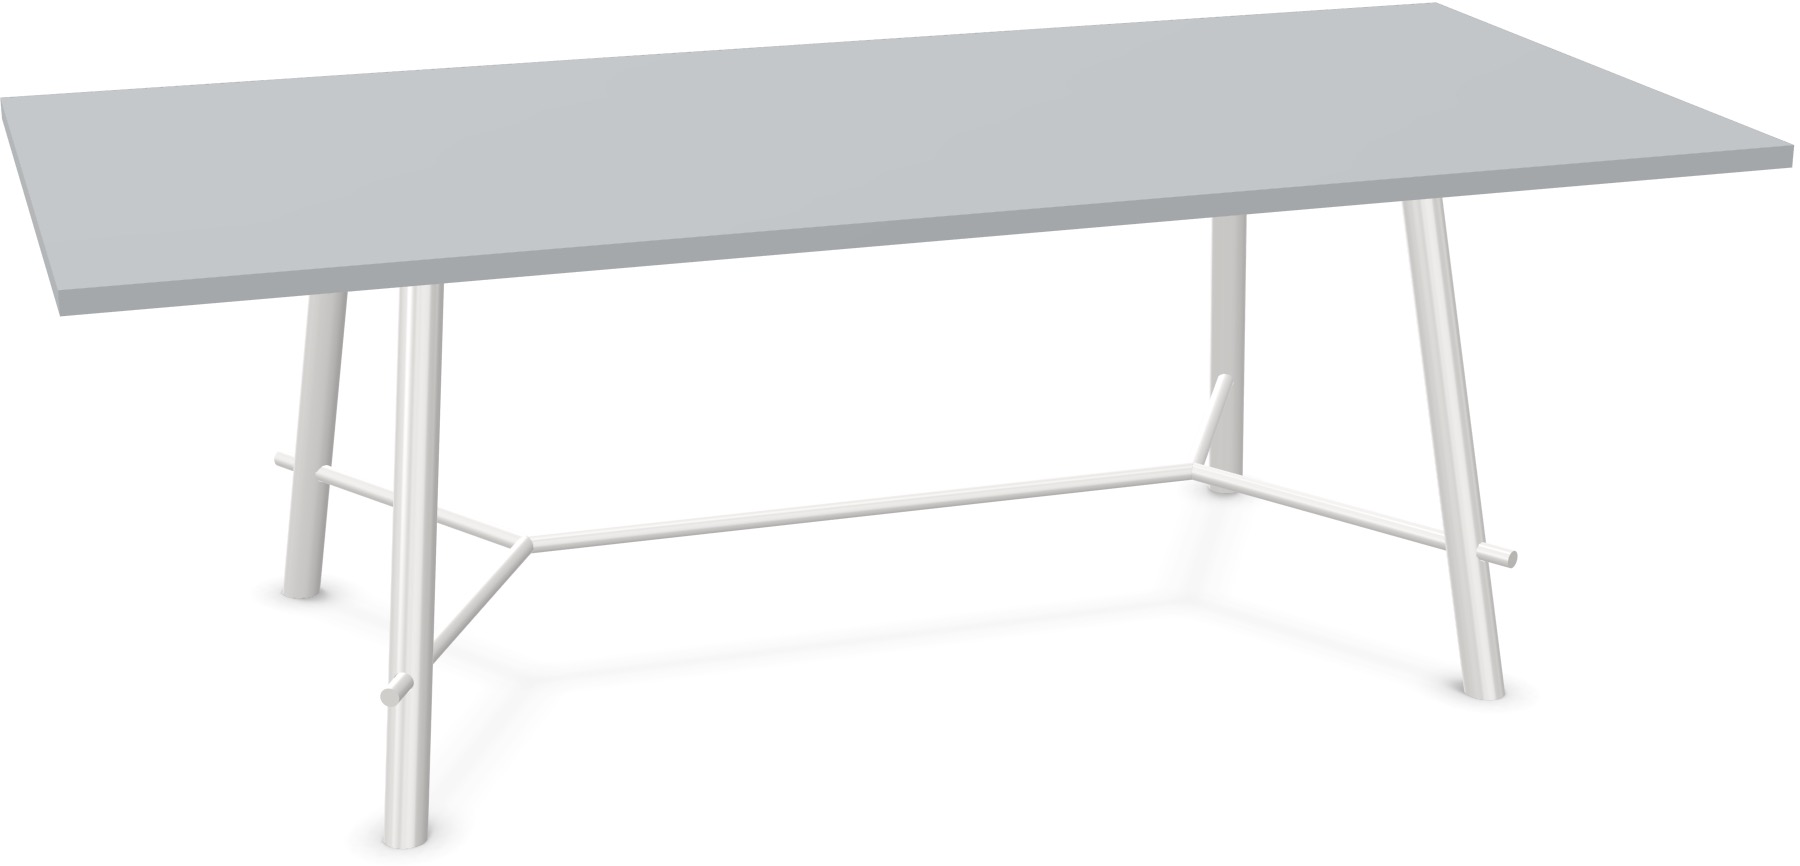 Record Living Maxi Tisch in Hellgrau / Weiss präsentiert im Onlineshop von KAQTU Design AG. Esstisch ist von Infiniti Design